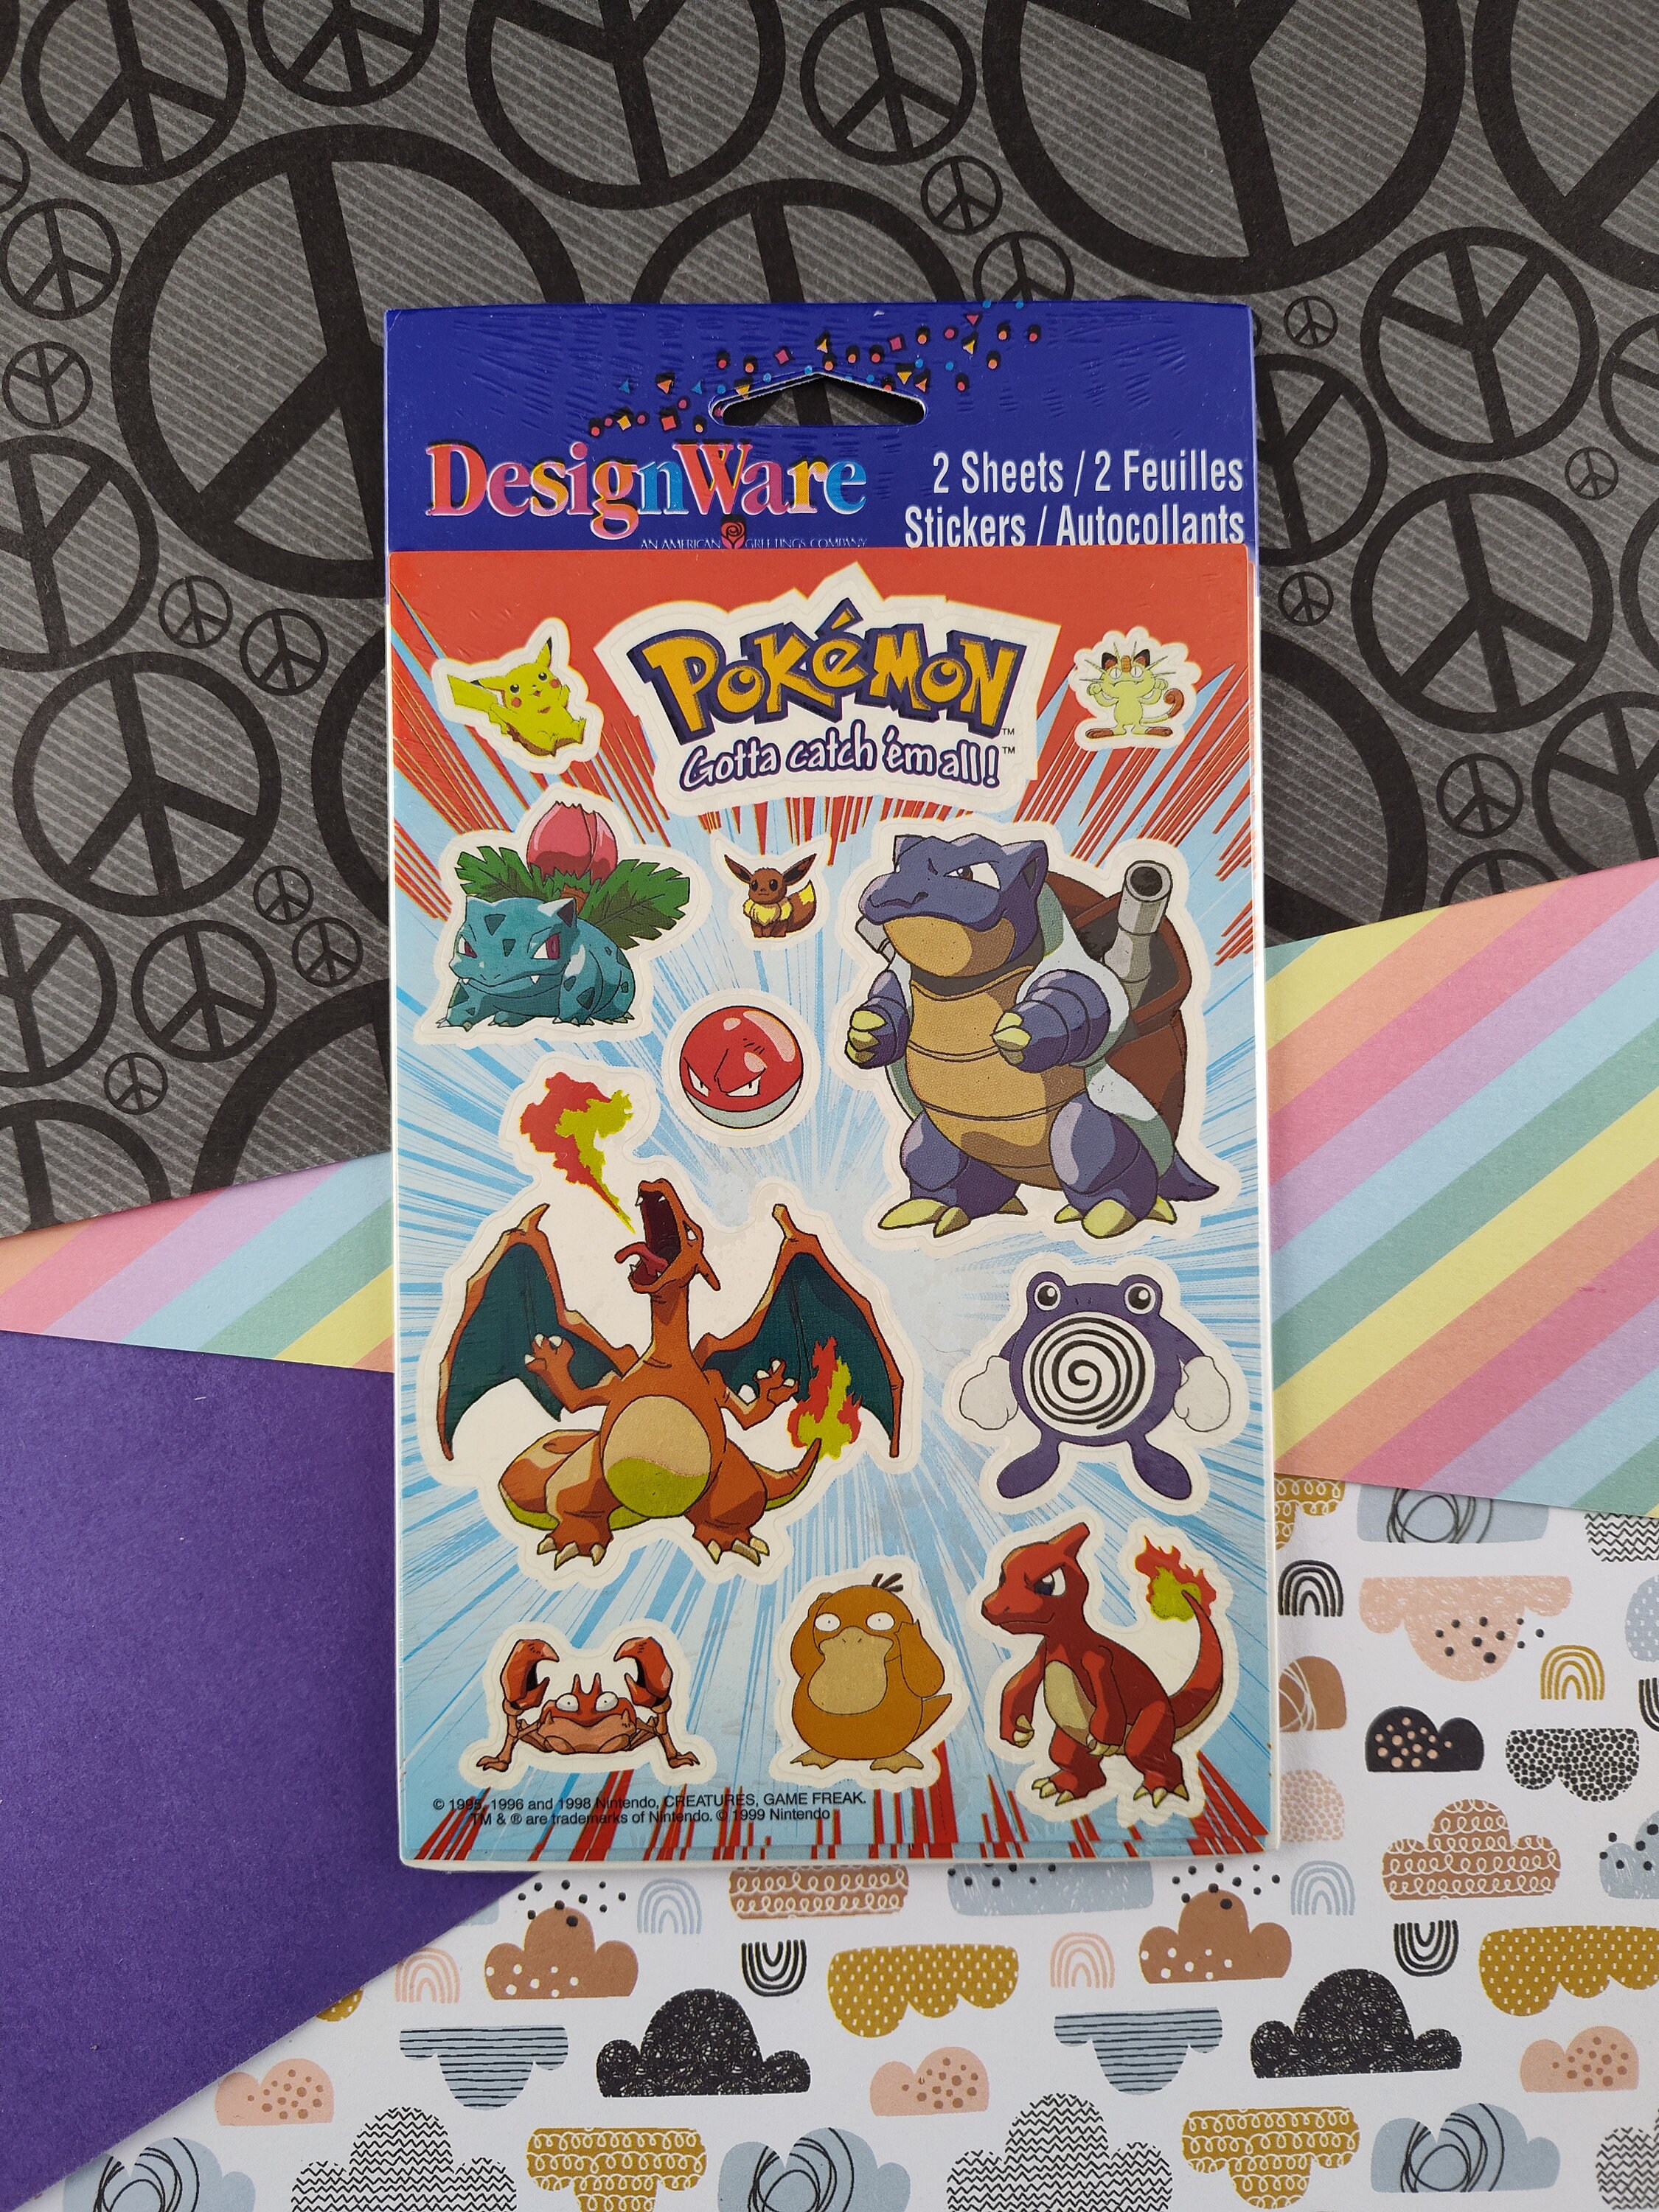 Pokémon 1995, 1996, 1998 sticker pack.